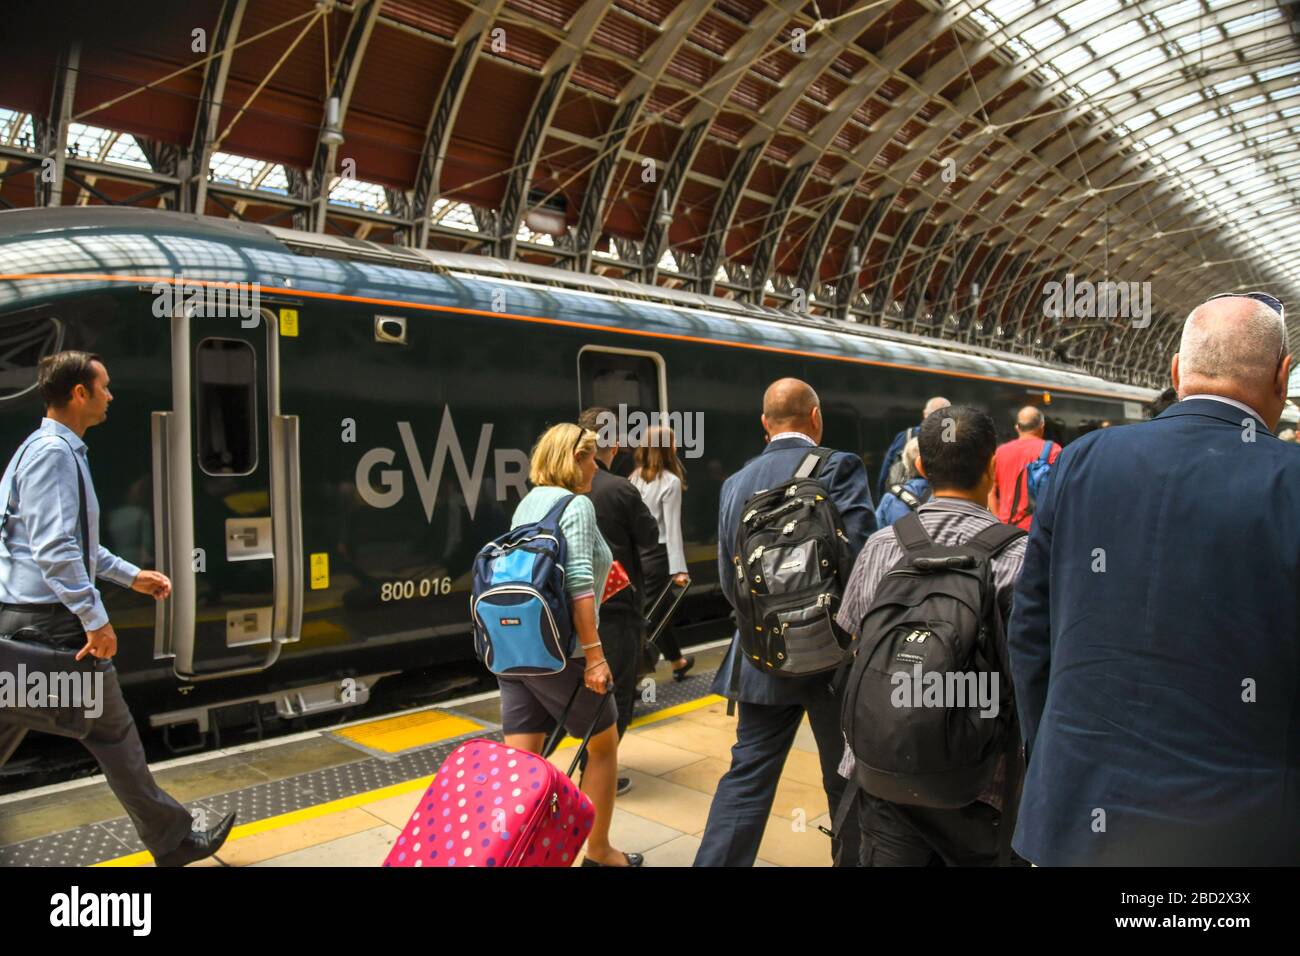 LONDON, ENGLAND - JULI 2018: Menschen, die auf einem Bahnsteig am Bahnhof London Paddington spazieren, um nach Bekanntwerden der Bahnsteignummer einen Zug zu nehmen. Stockfoto